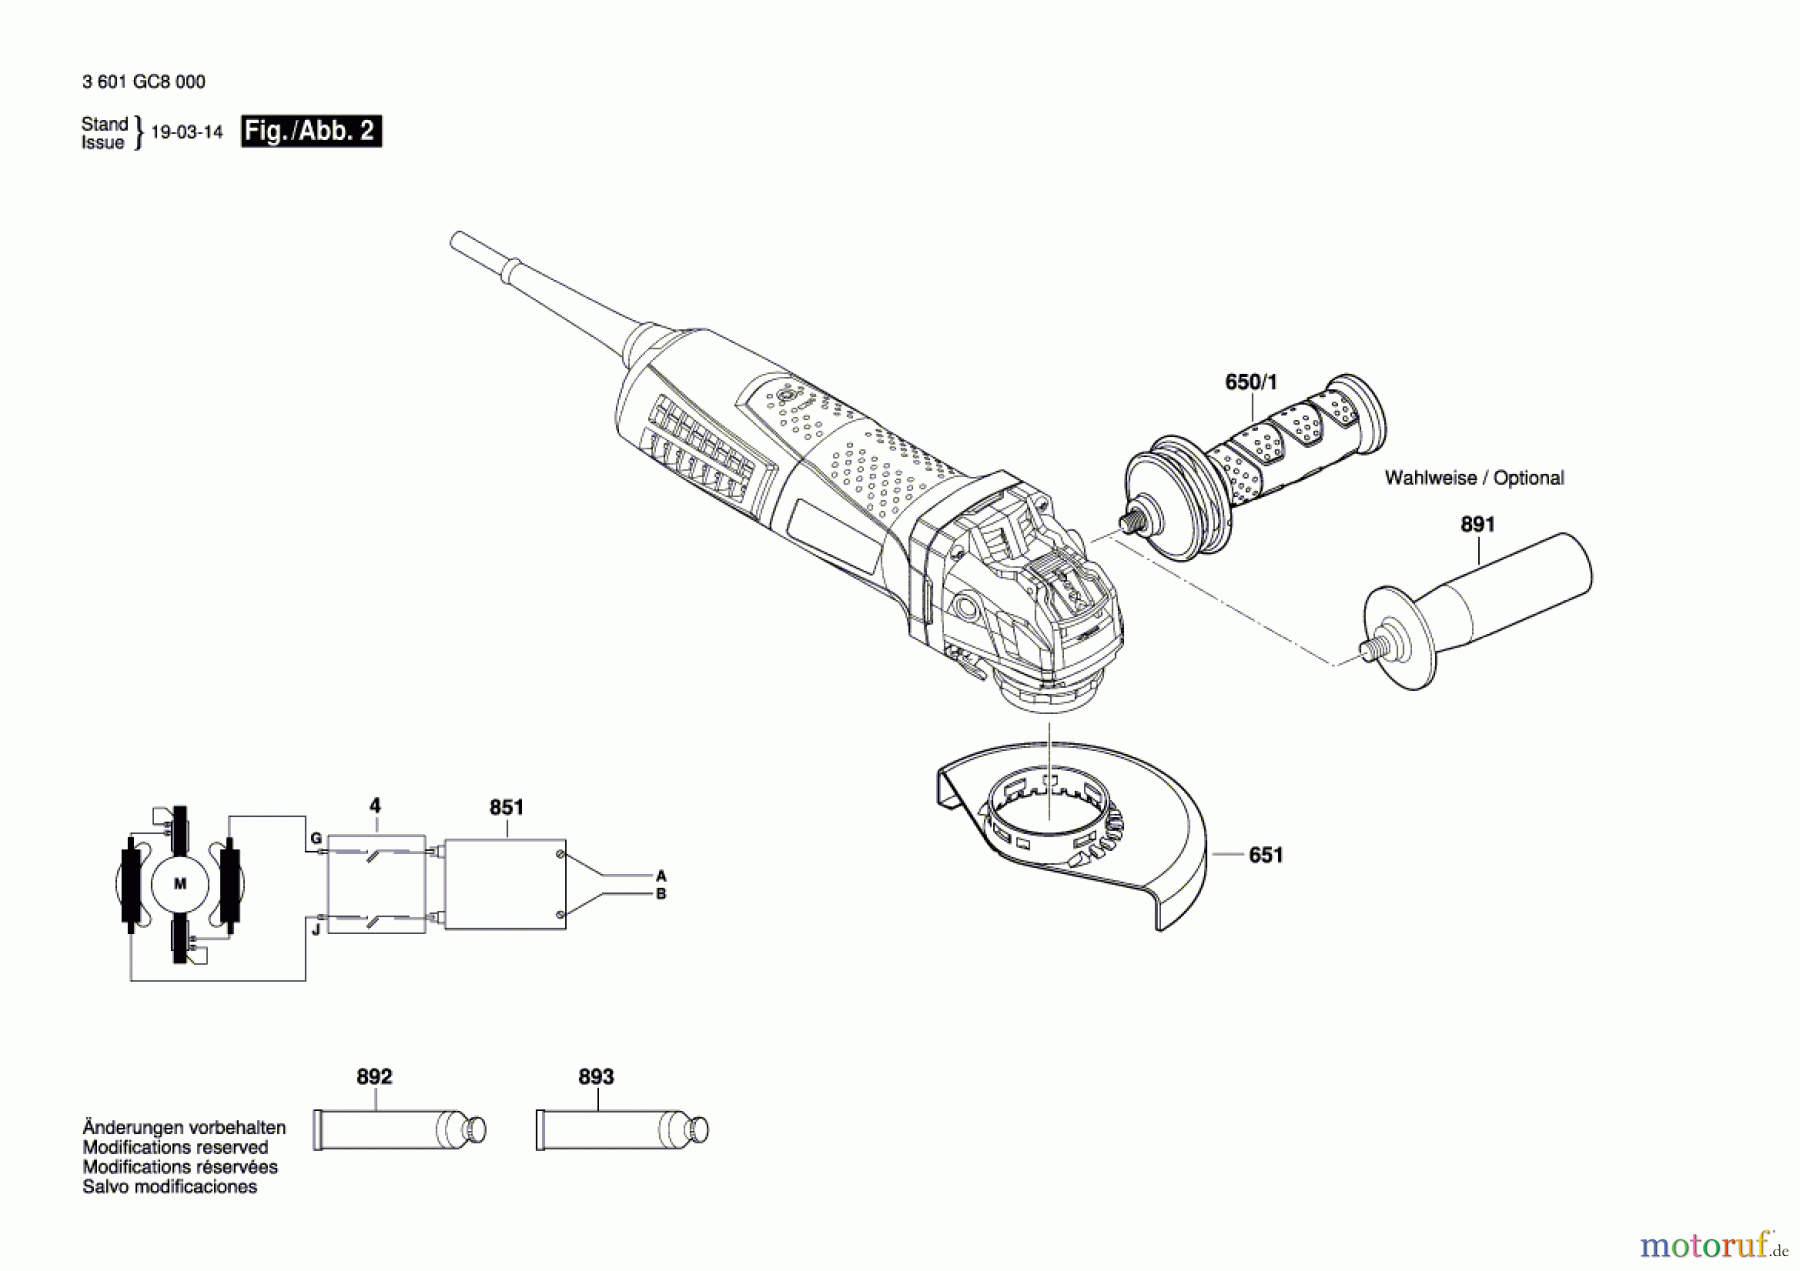  Bosch Werkzeug Winkelschleifer GWX 19-125 S Seite 2